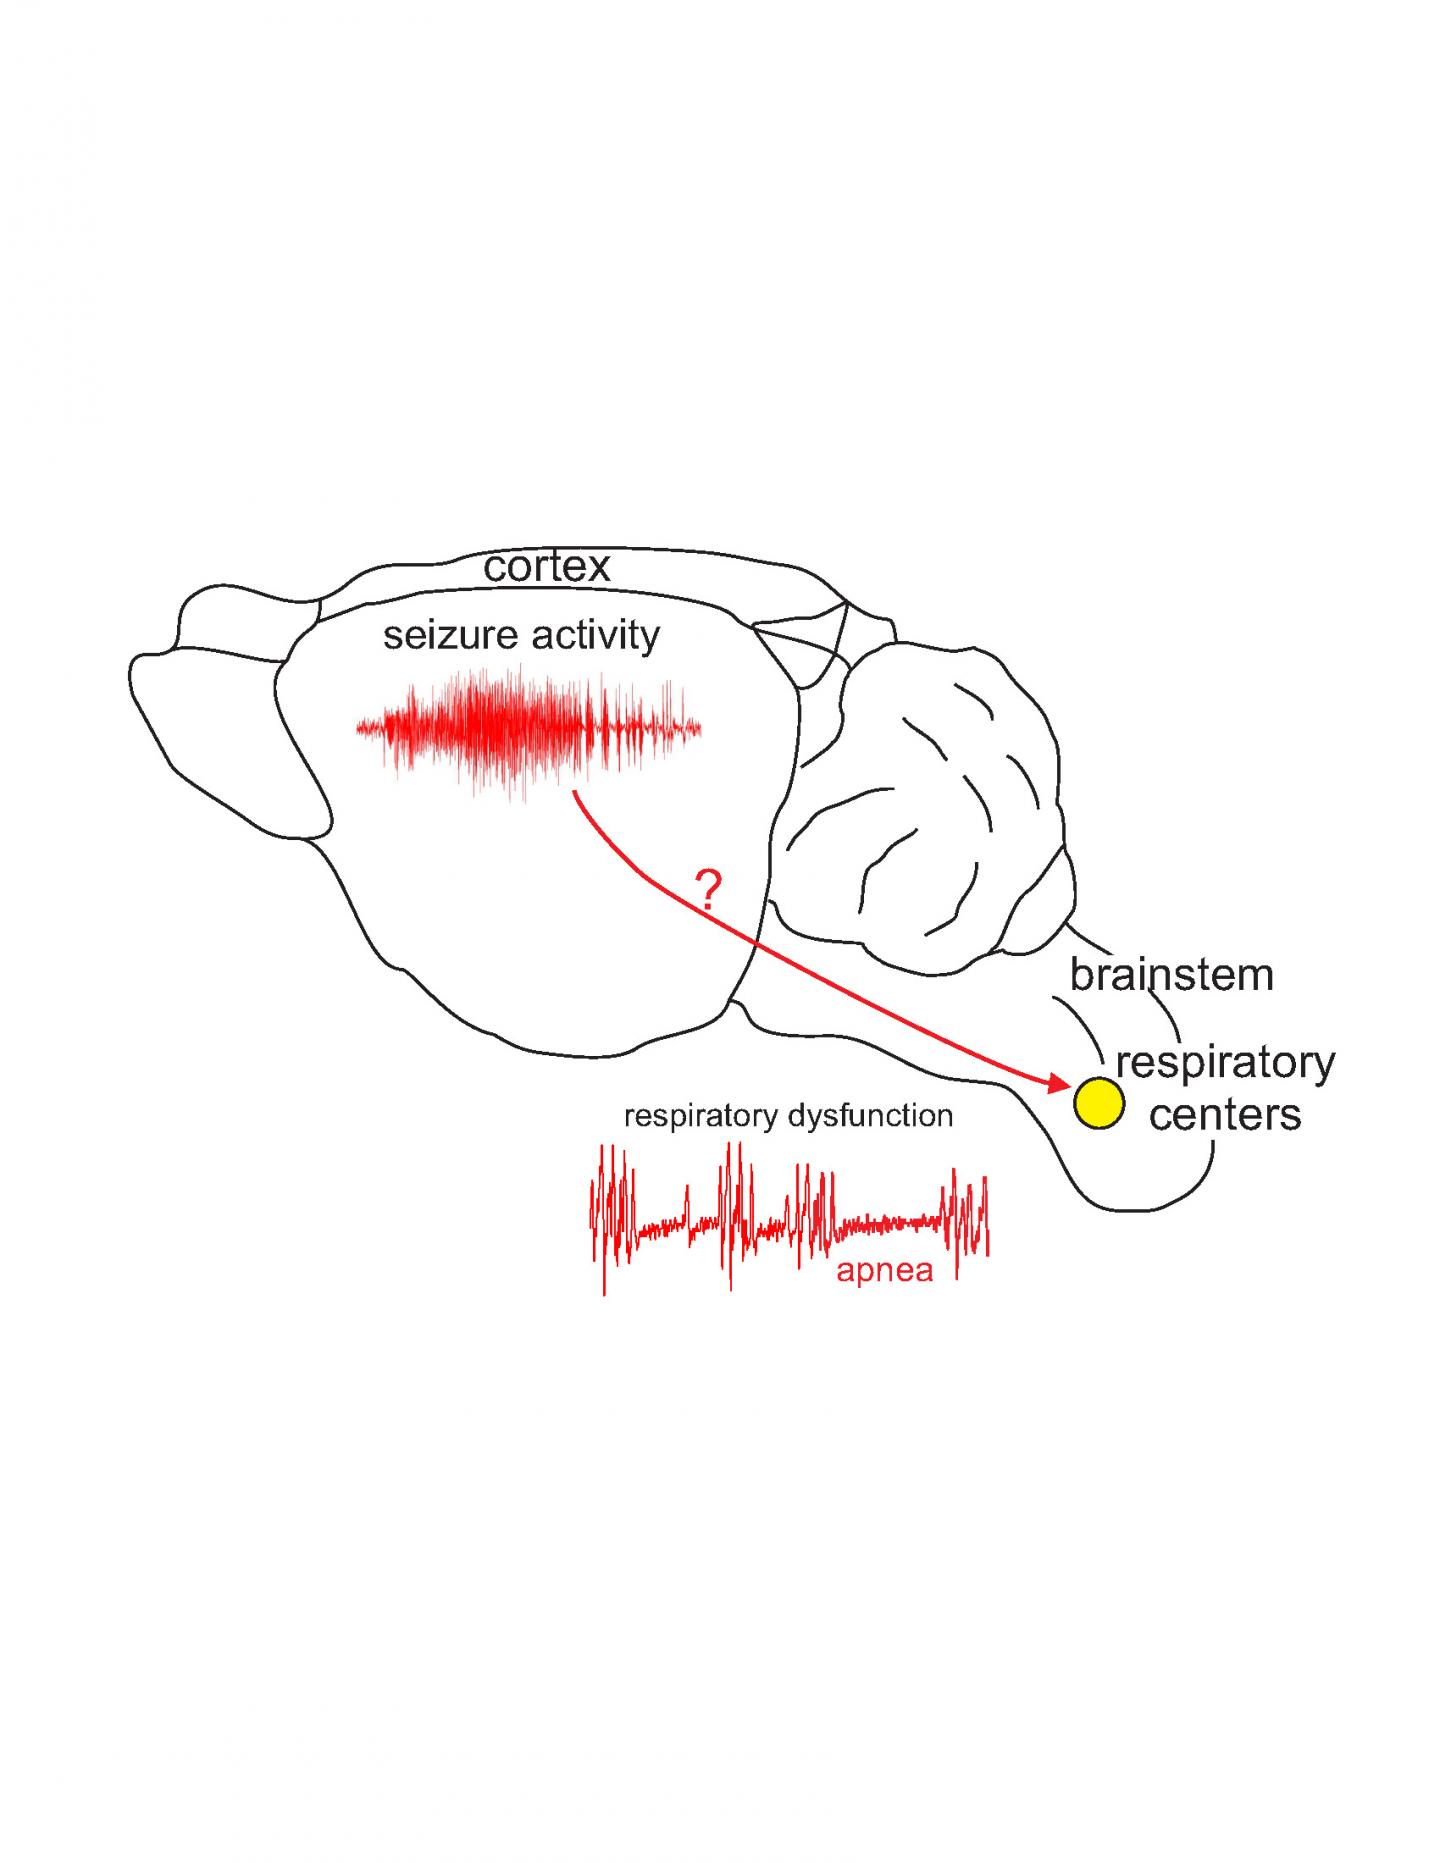 Sudden Death in Epilepsy: Do Seizures Travel From Cortex to Brainstem?